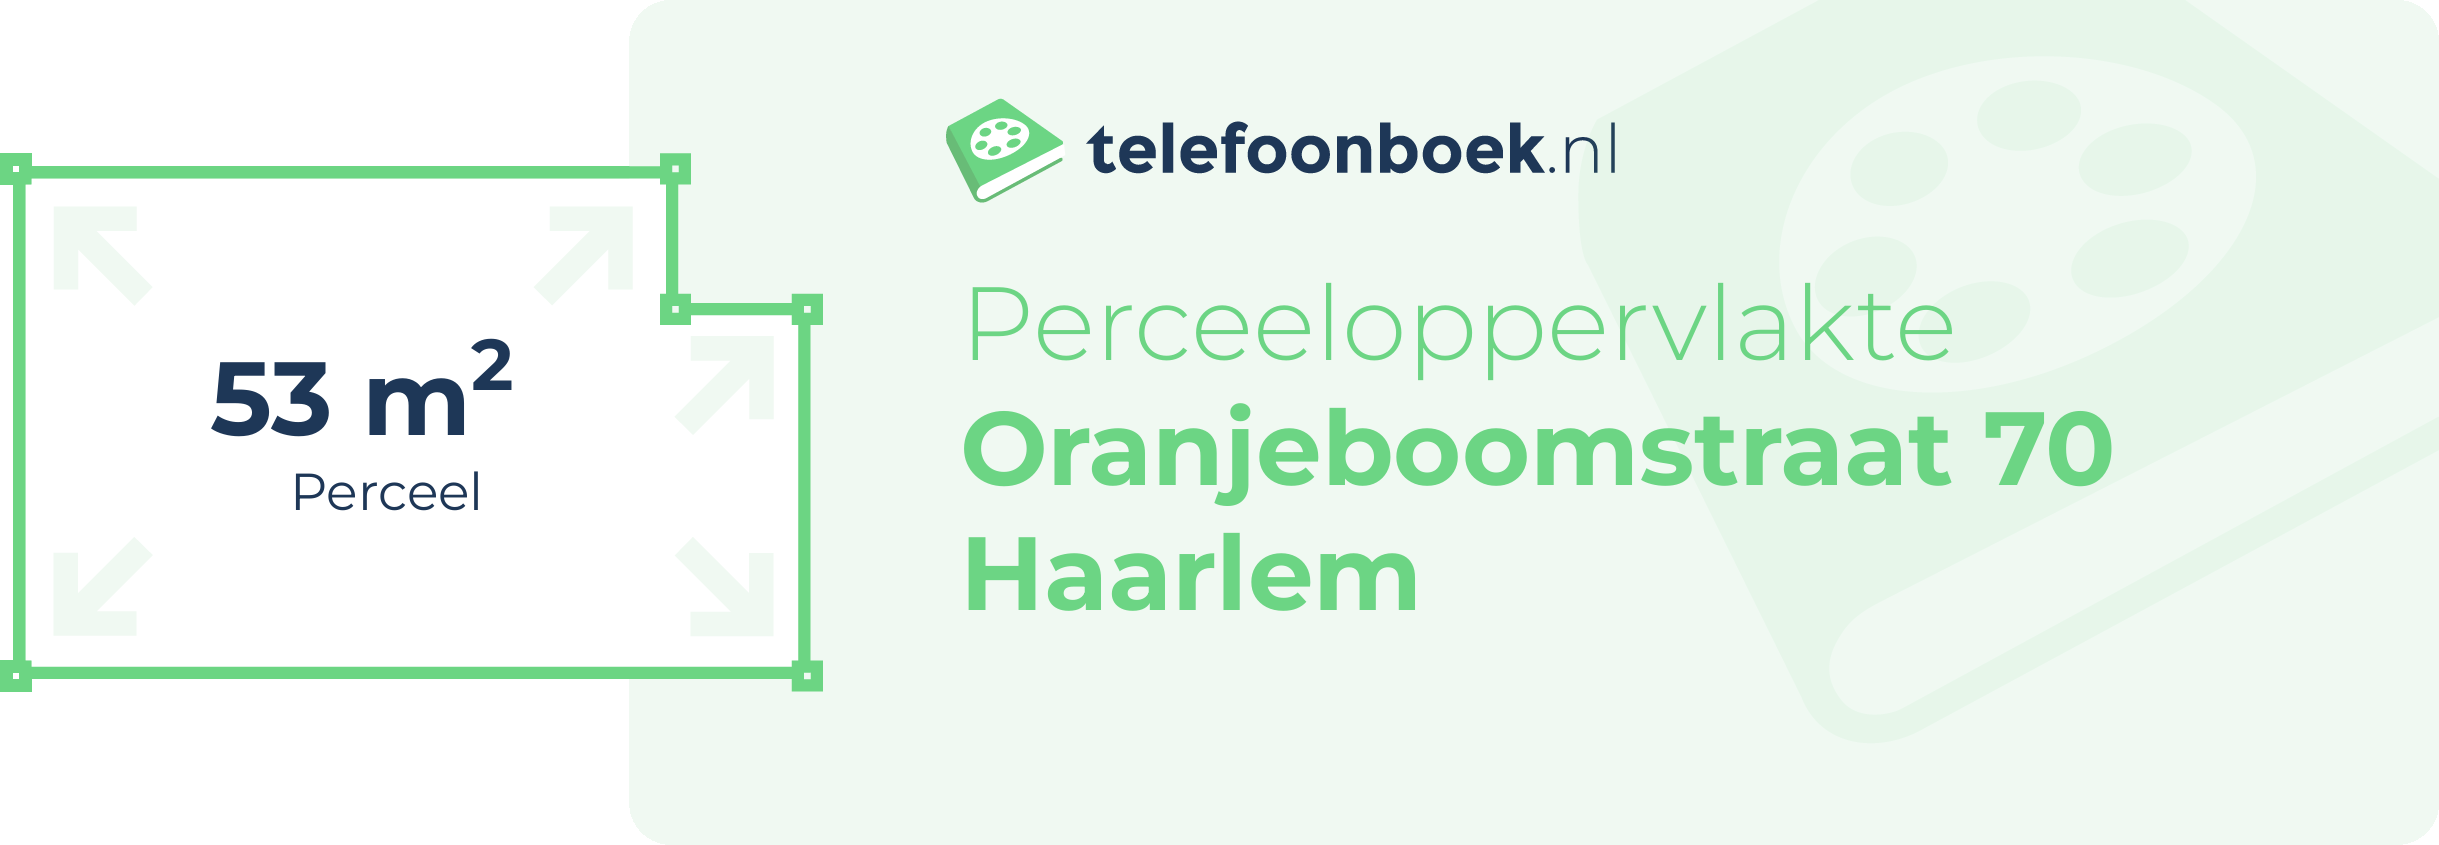 Perceeloppervlakte Oranjeboomstraat 70 Haarlem